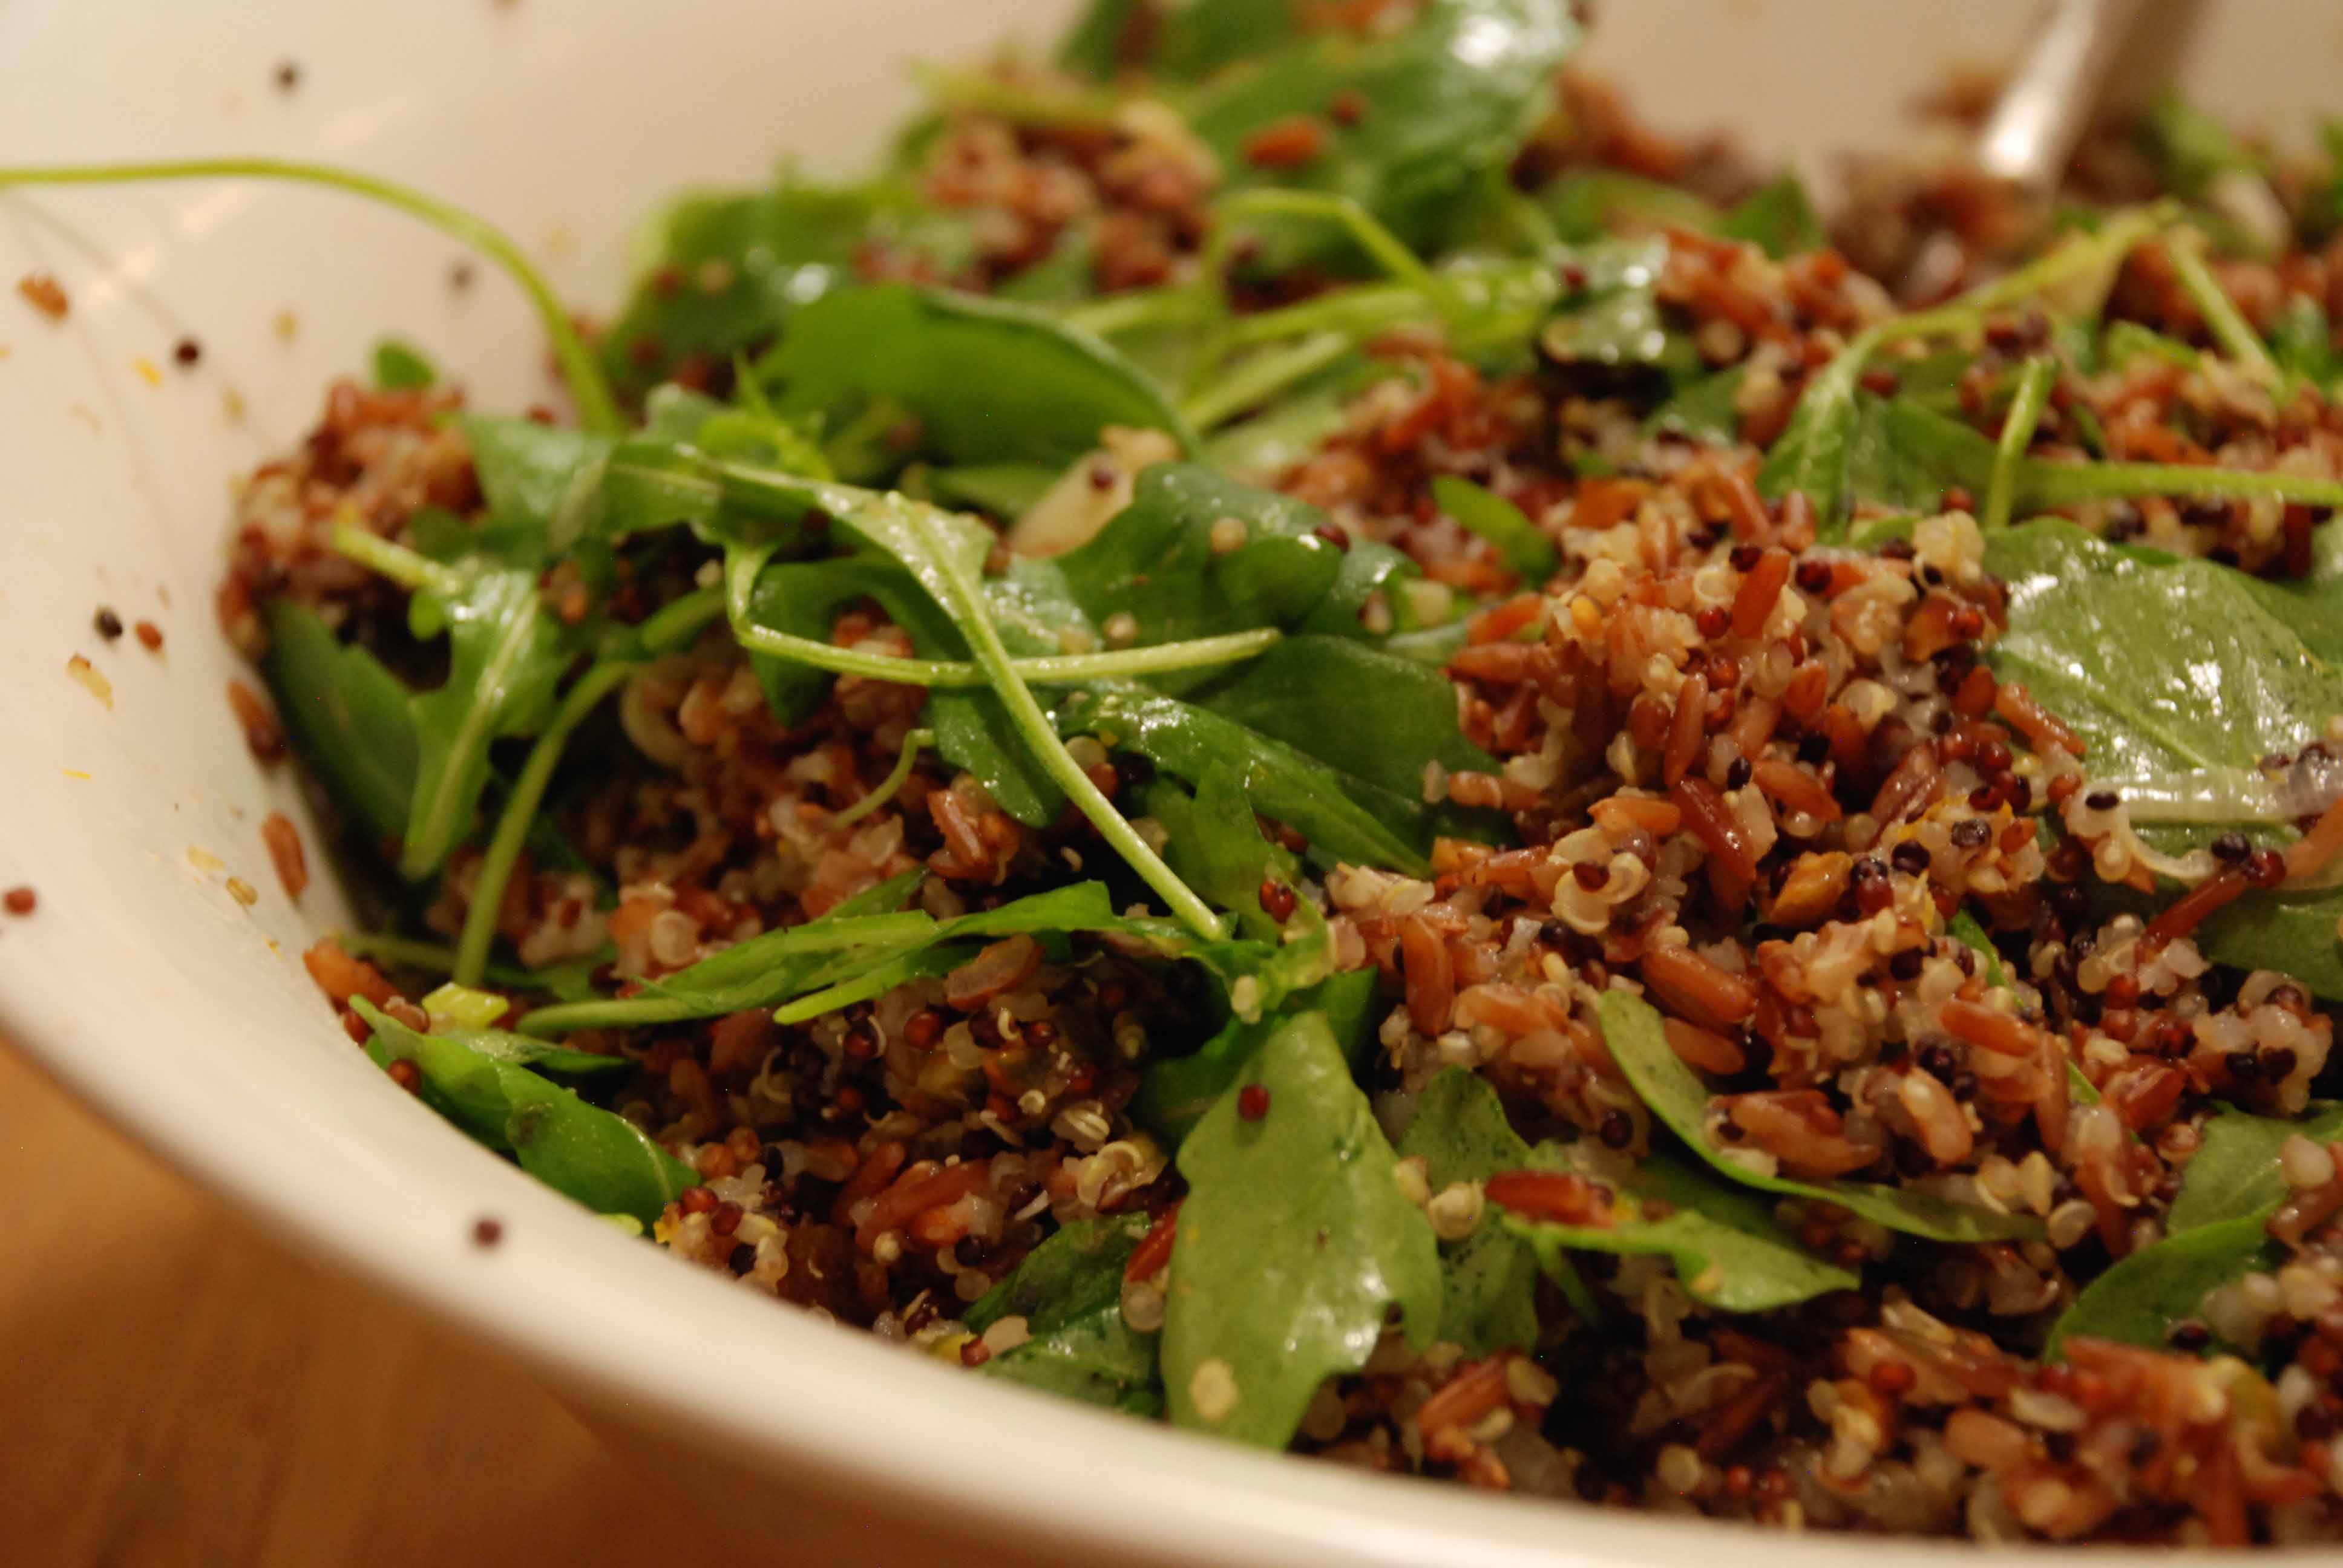  
Roter Camargue-Reis und Quinoa mit Orange und Pistazien